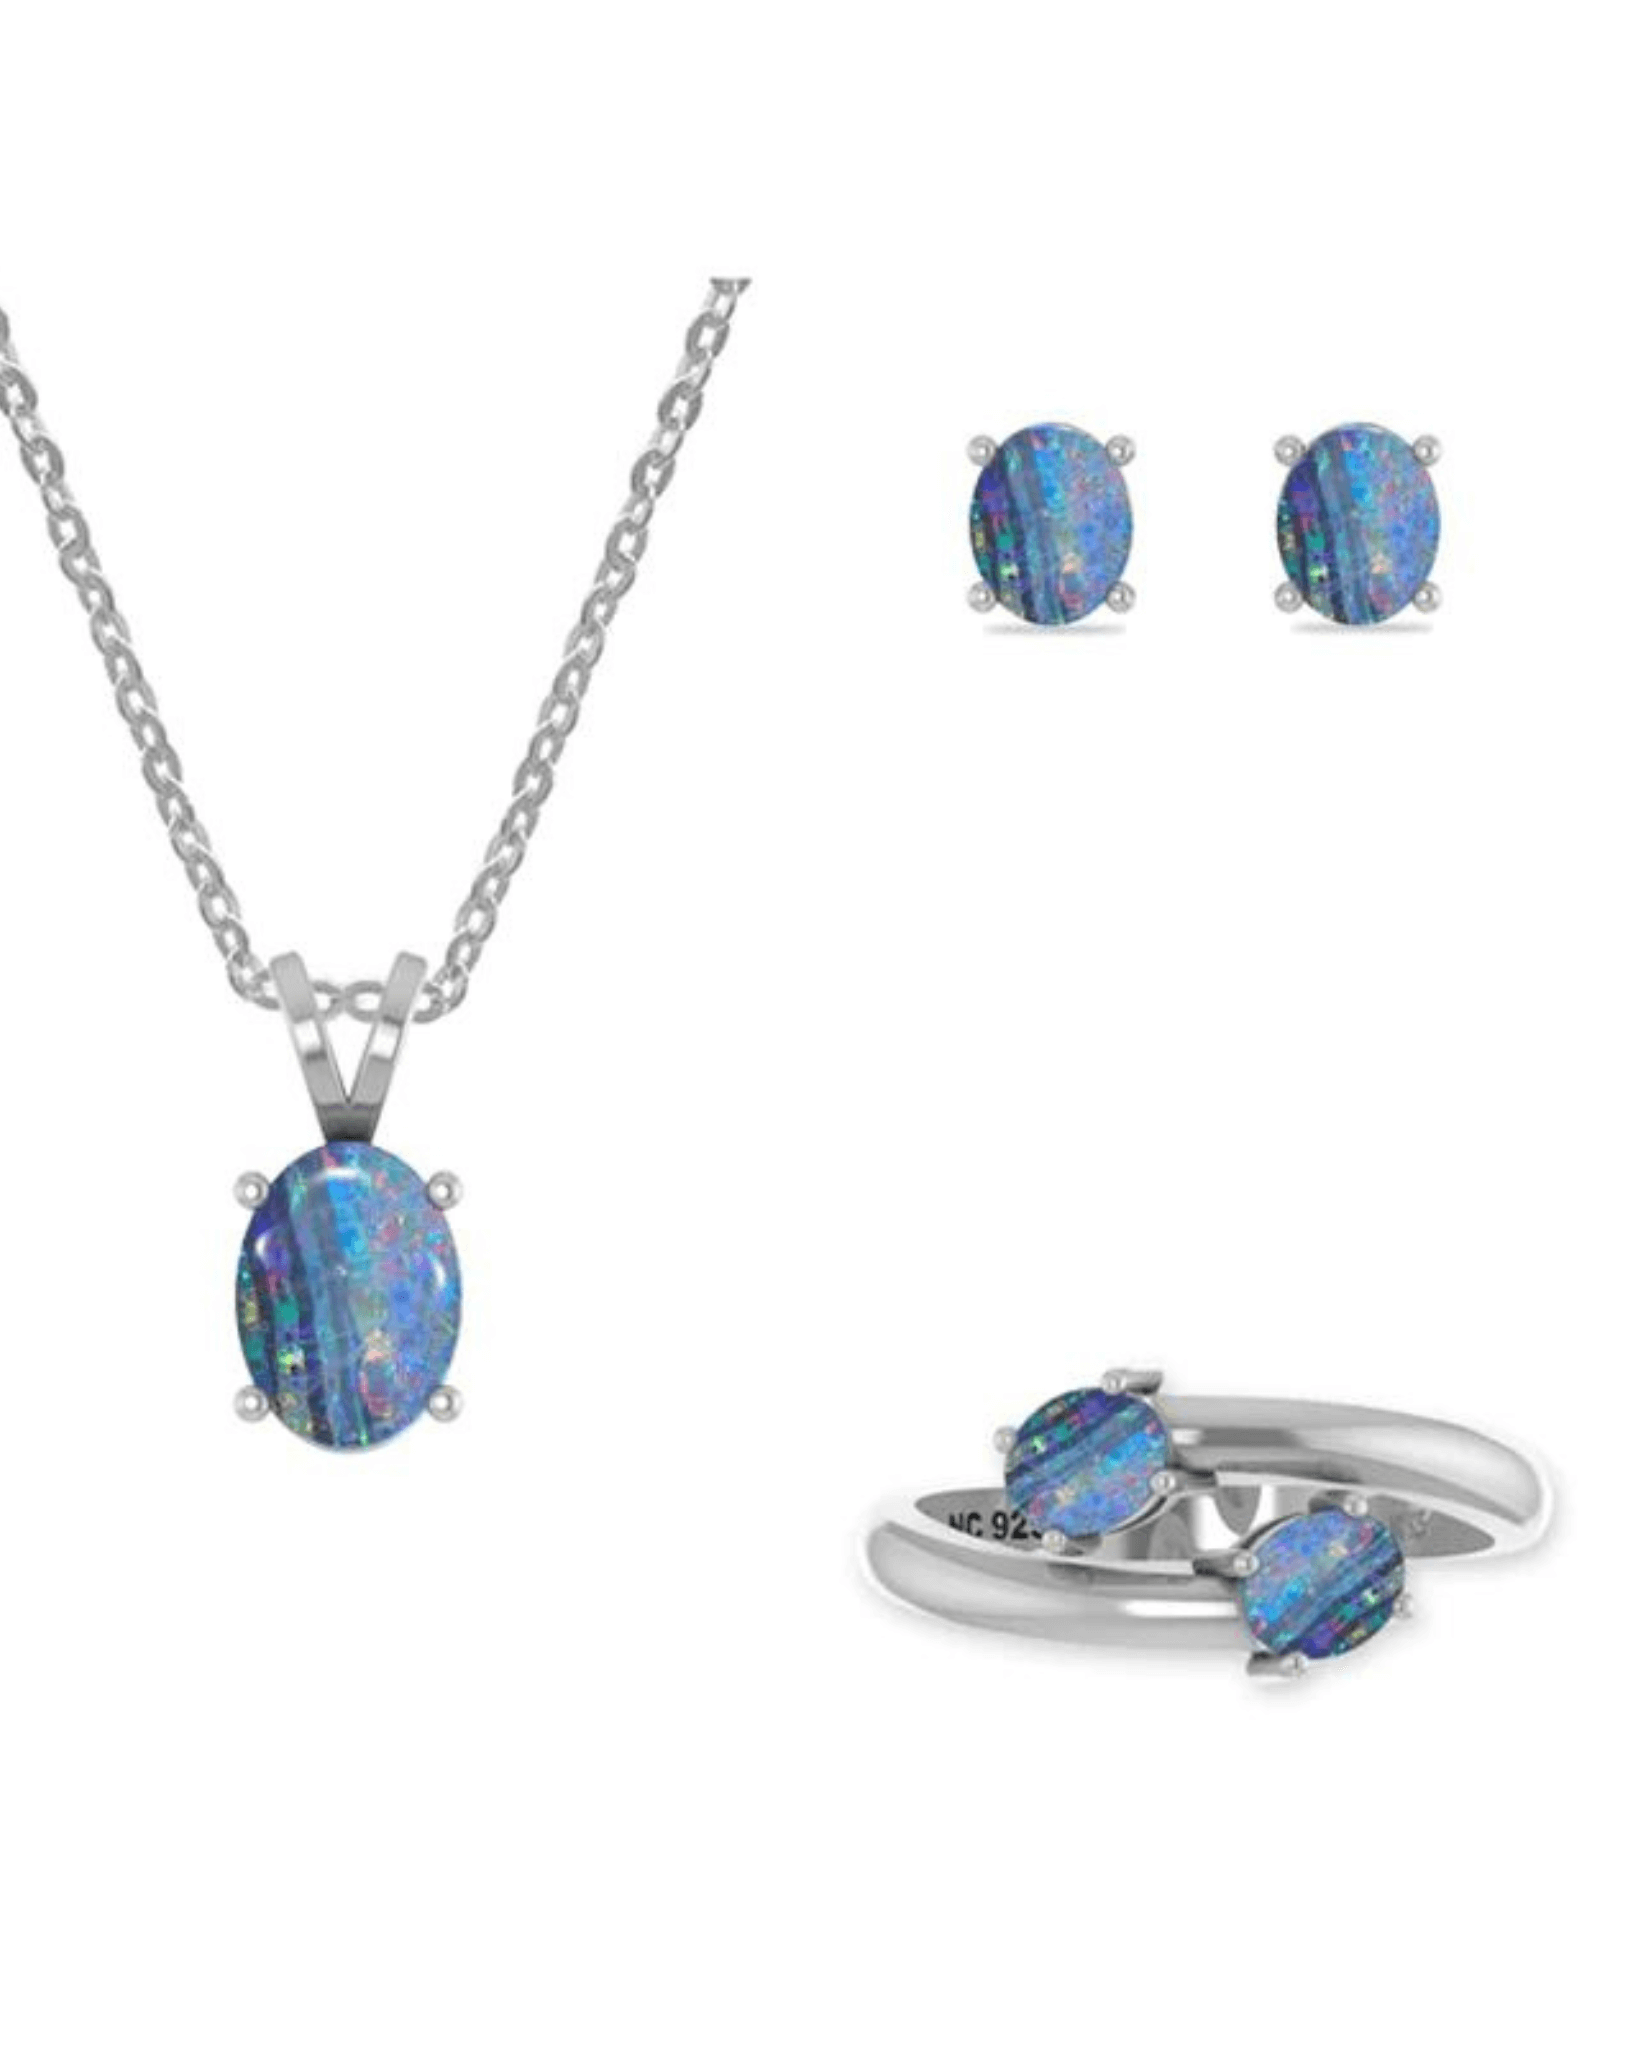 Australian Opal Crystal Necklace Jewellery Silver Set 925